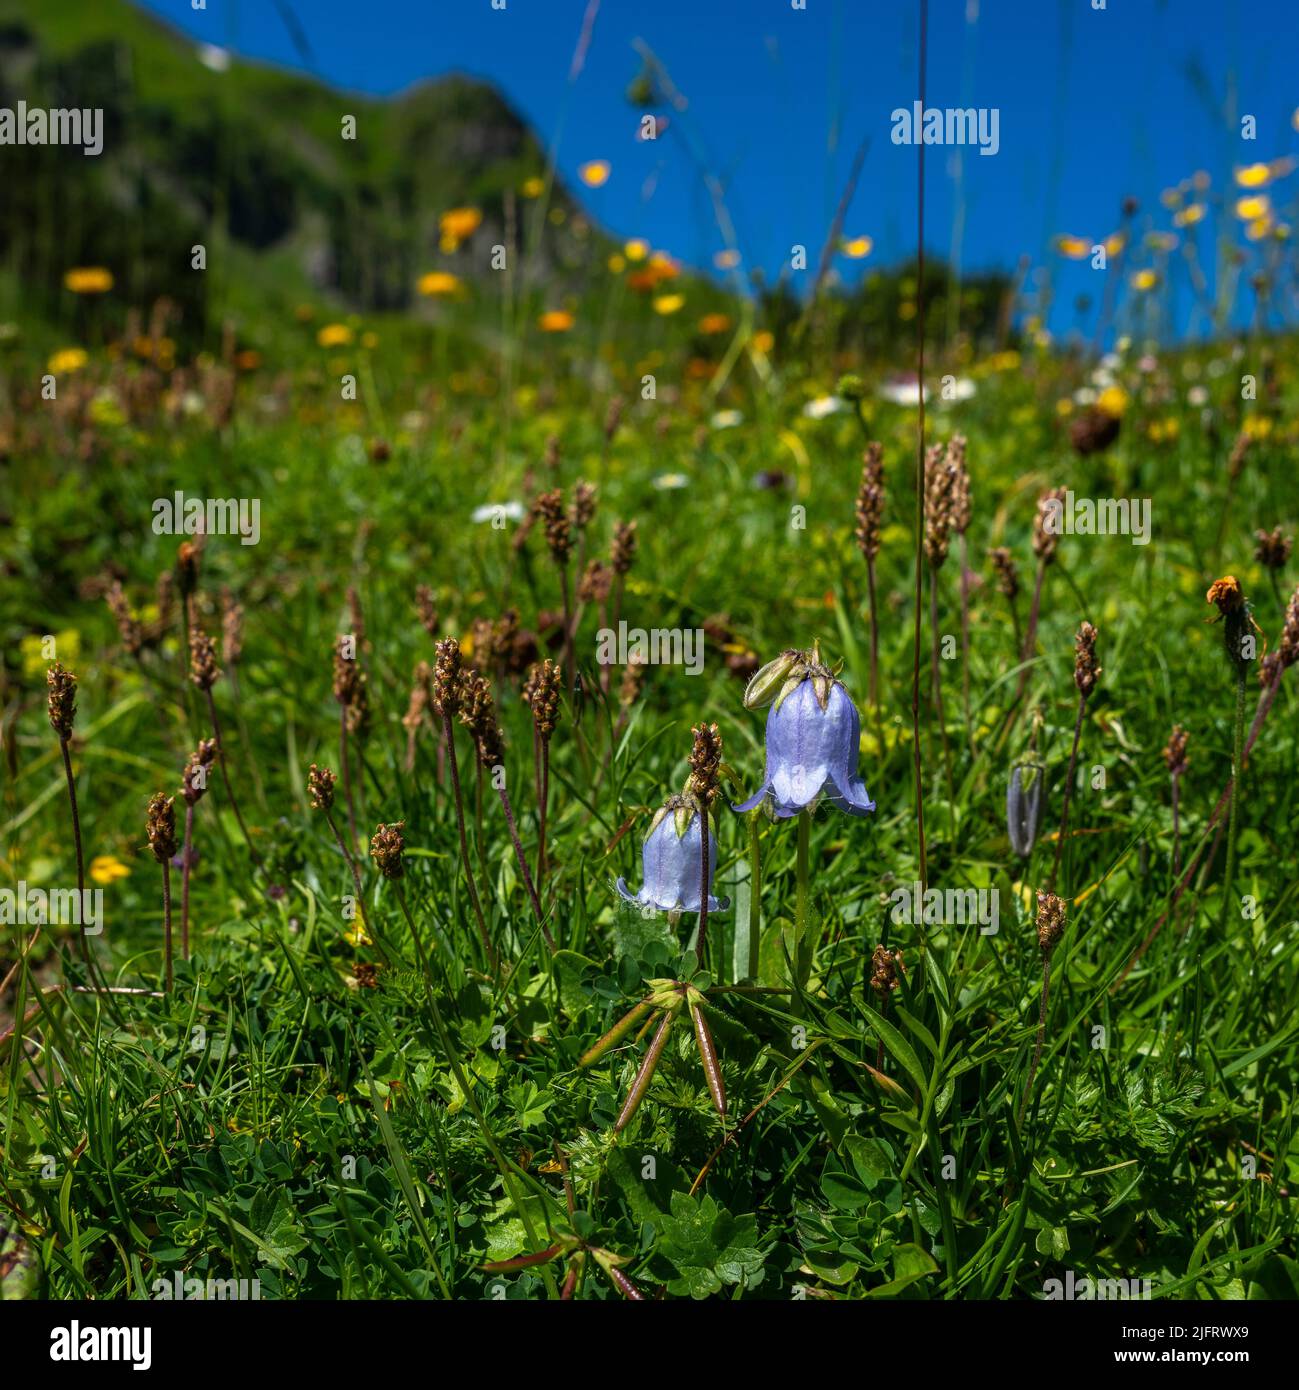 prato fiorito alpino con fiori diversi, campanile blu, margherite, arnica, trifoglio giallo e rosa, rose rosse alpine. Fiore in bianco e viola Foto Stock